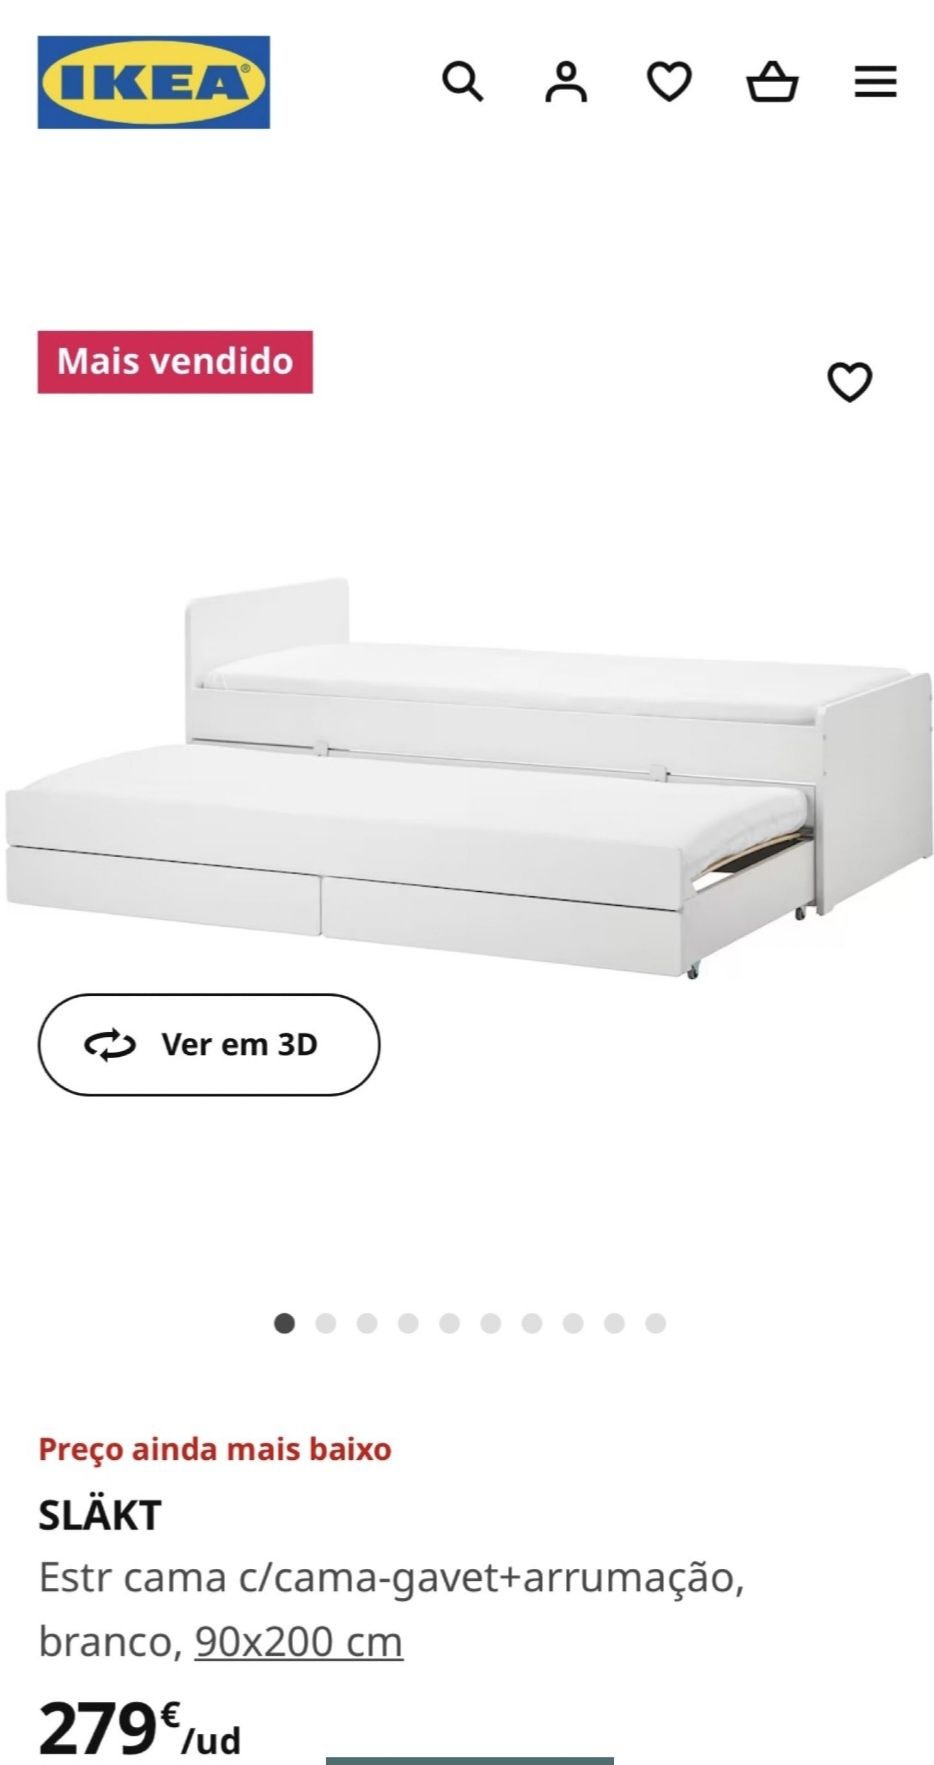 Cama dupla Ikea com gavetas e 2 colchões